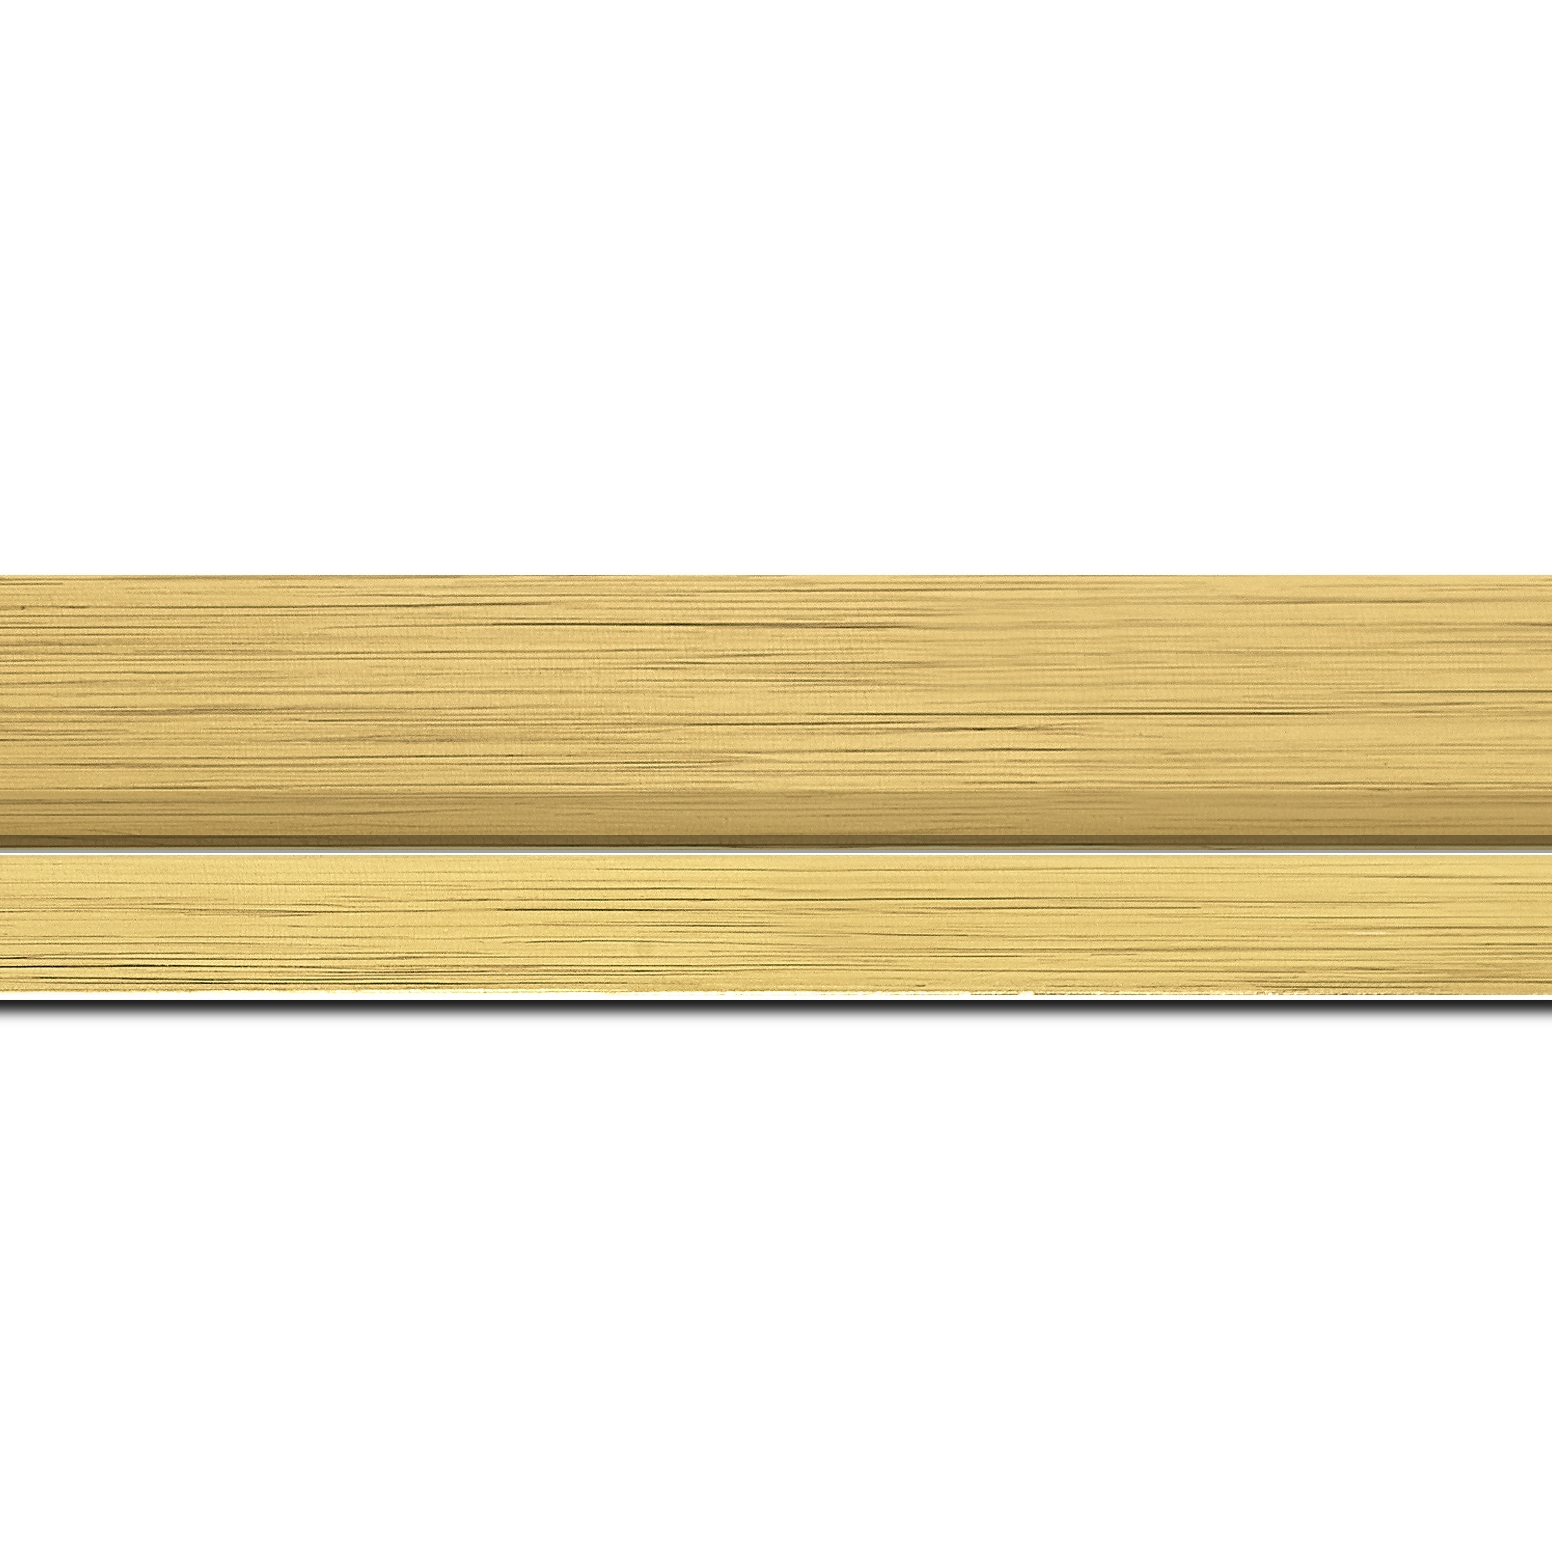 Pack par 12m, bois profil plat largeur 4.5cm couleur or nez or  (longueur baguette pouvant varier entre 2.40m et 3m selon arrivage des bois)